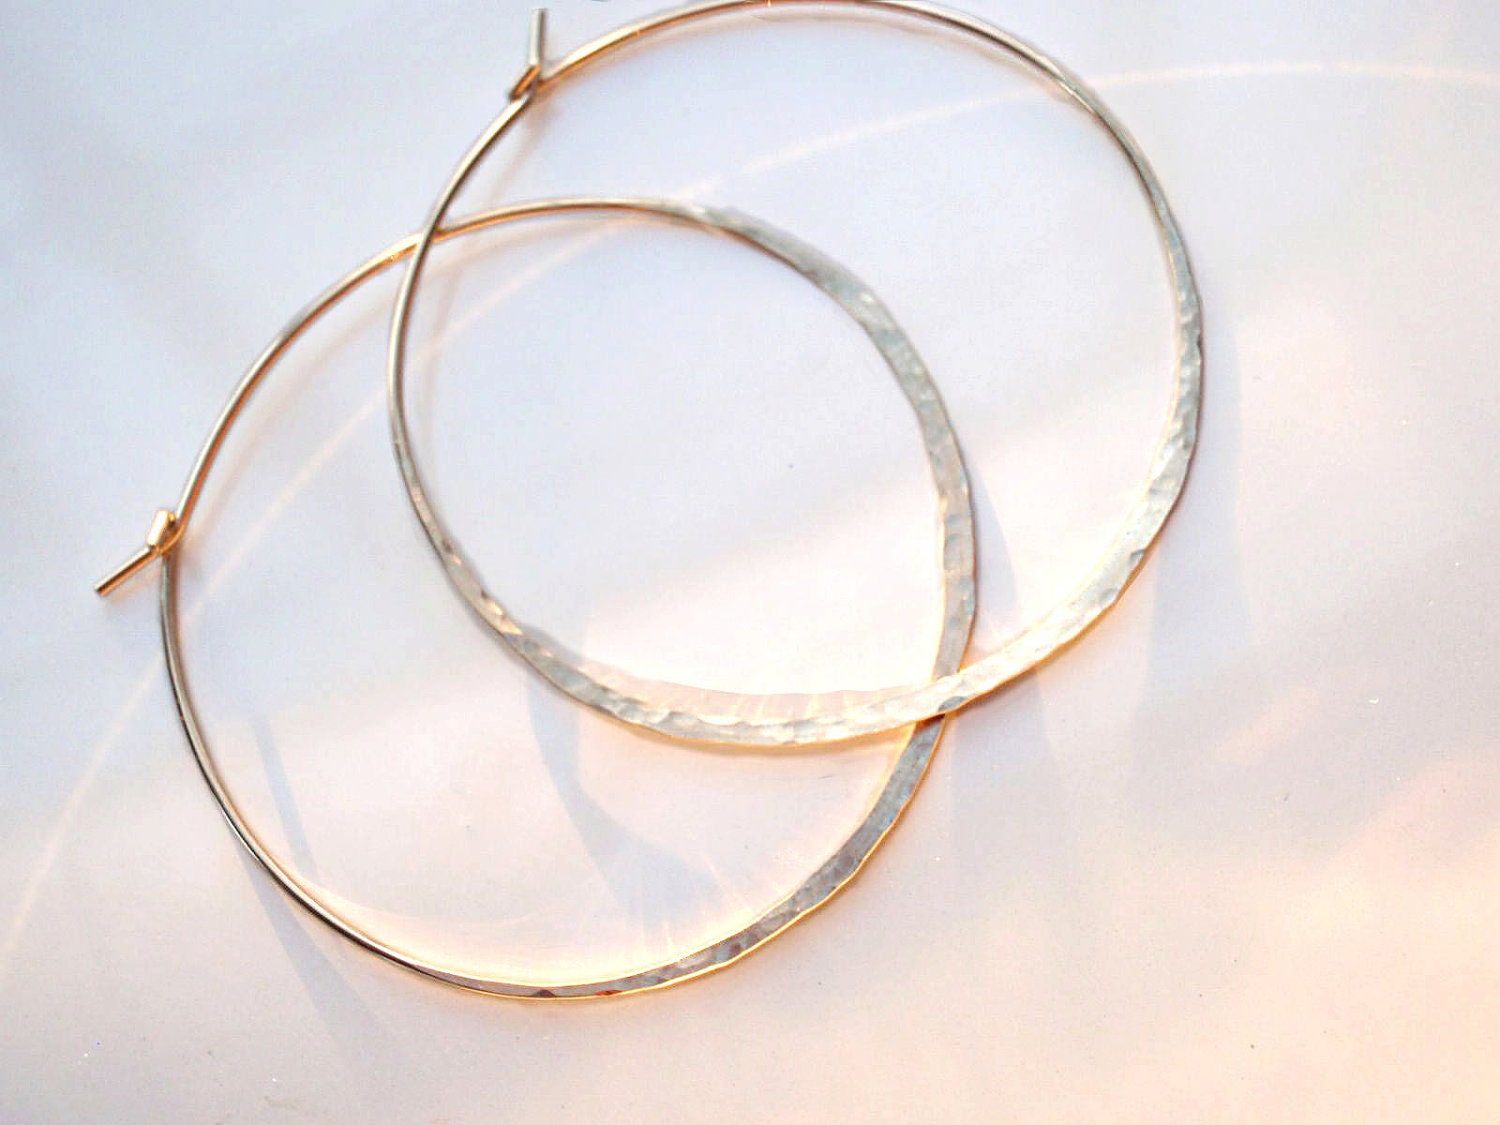 Huge Hoop Earrings on Gold Large Hoop Earrings Hammered Textured 18g By Gildedowljewelry